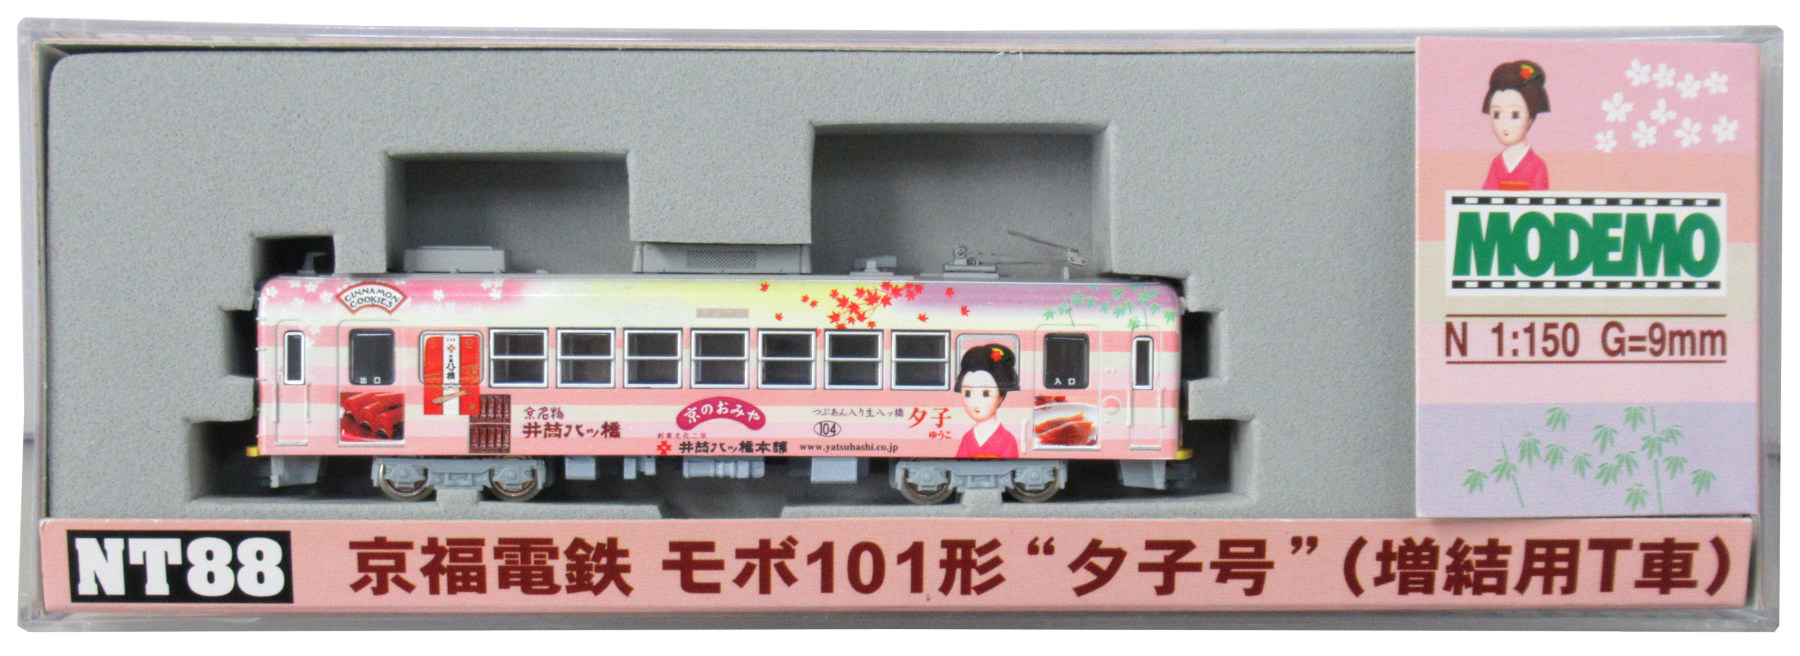 公式]鉄道模型(NT88京福電鉄 モボ101形 ”夕子号” (増結用T車))商品詳細